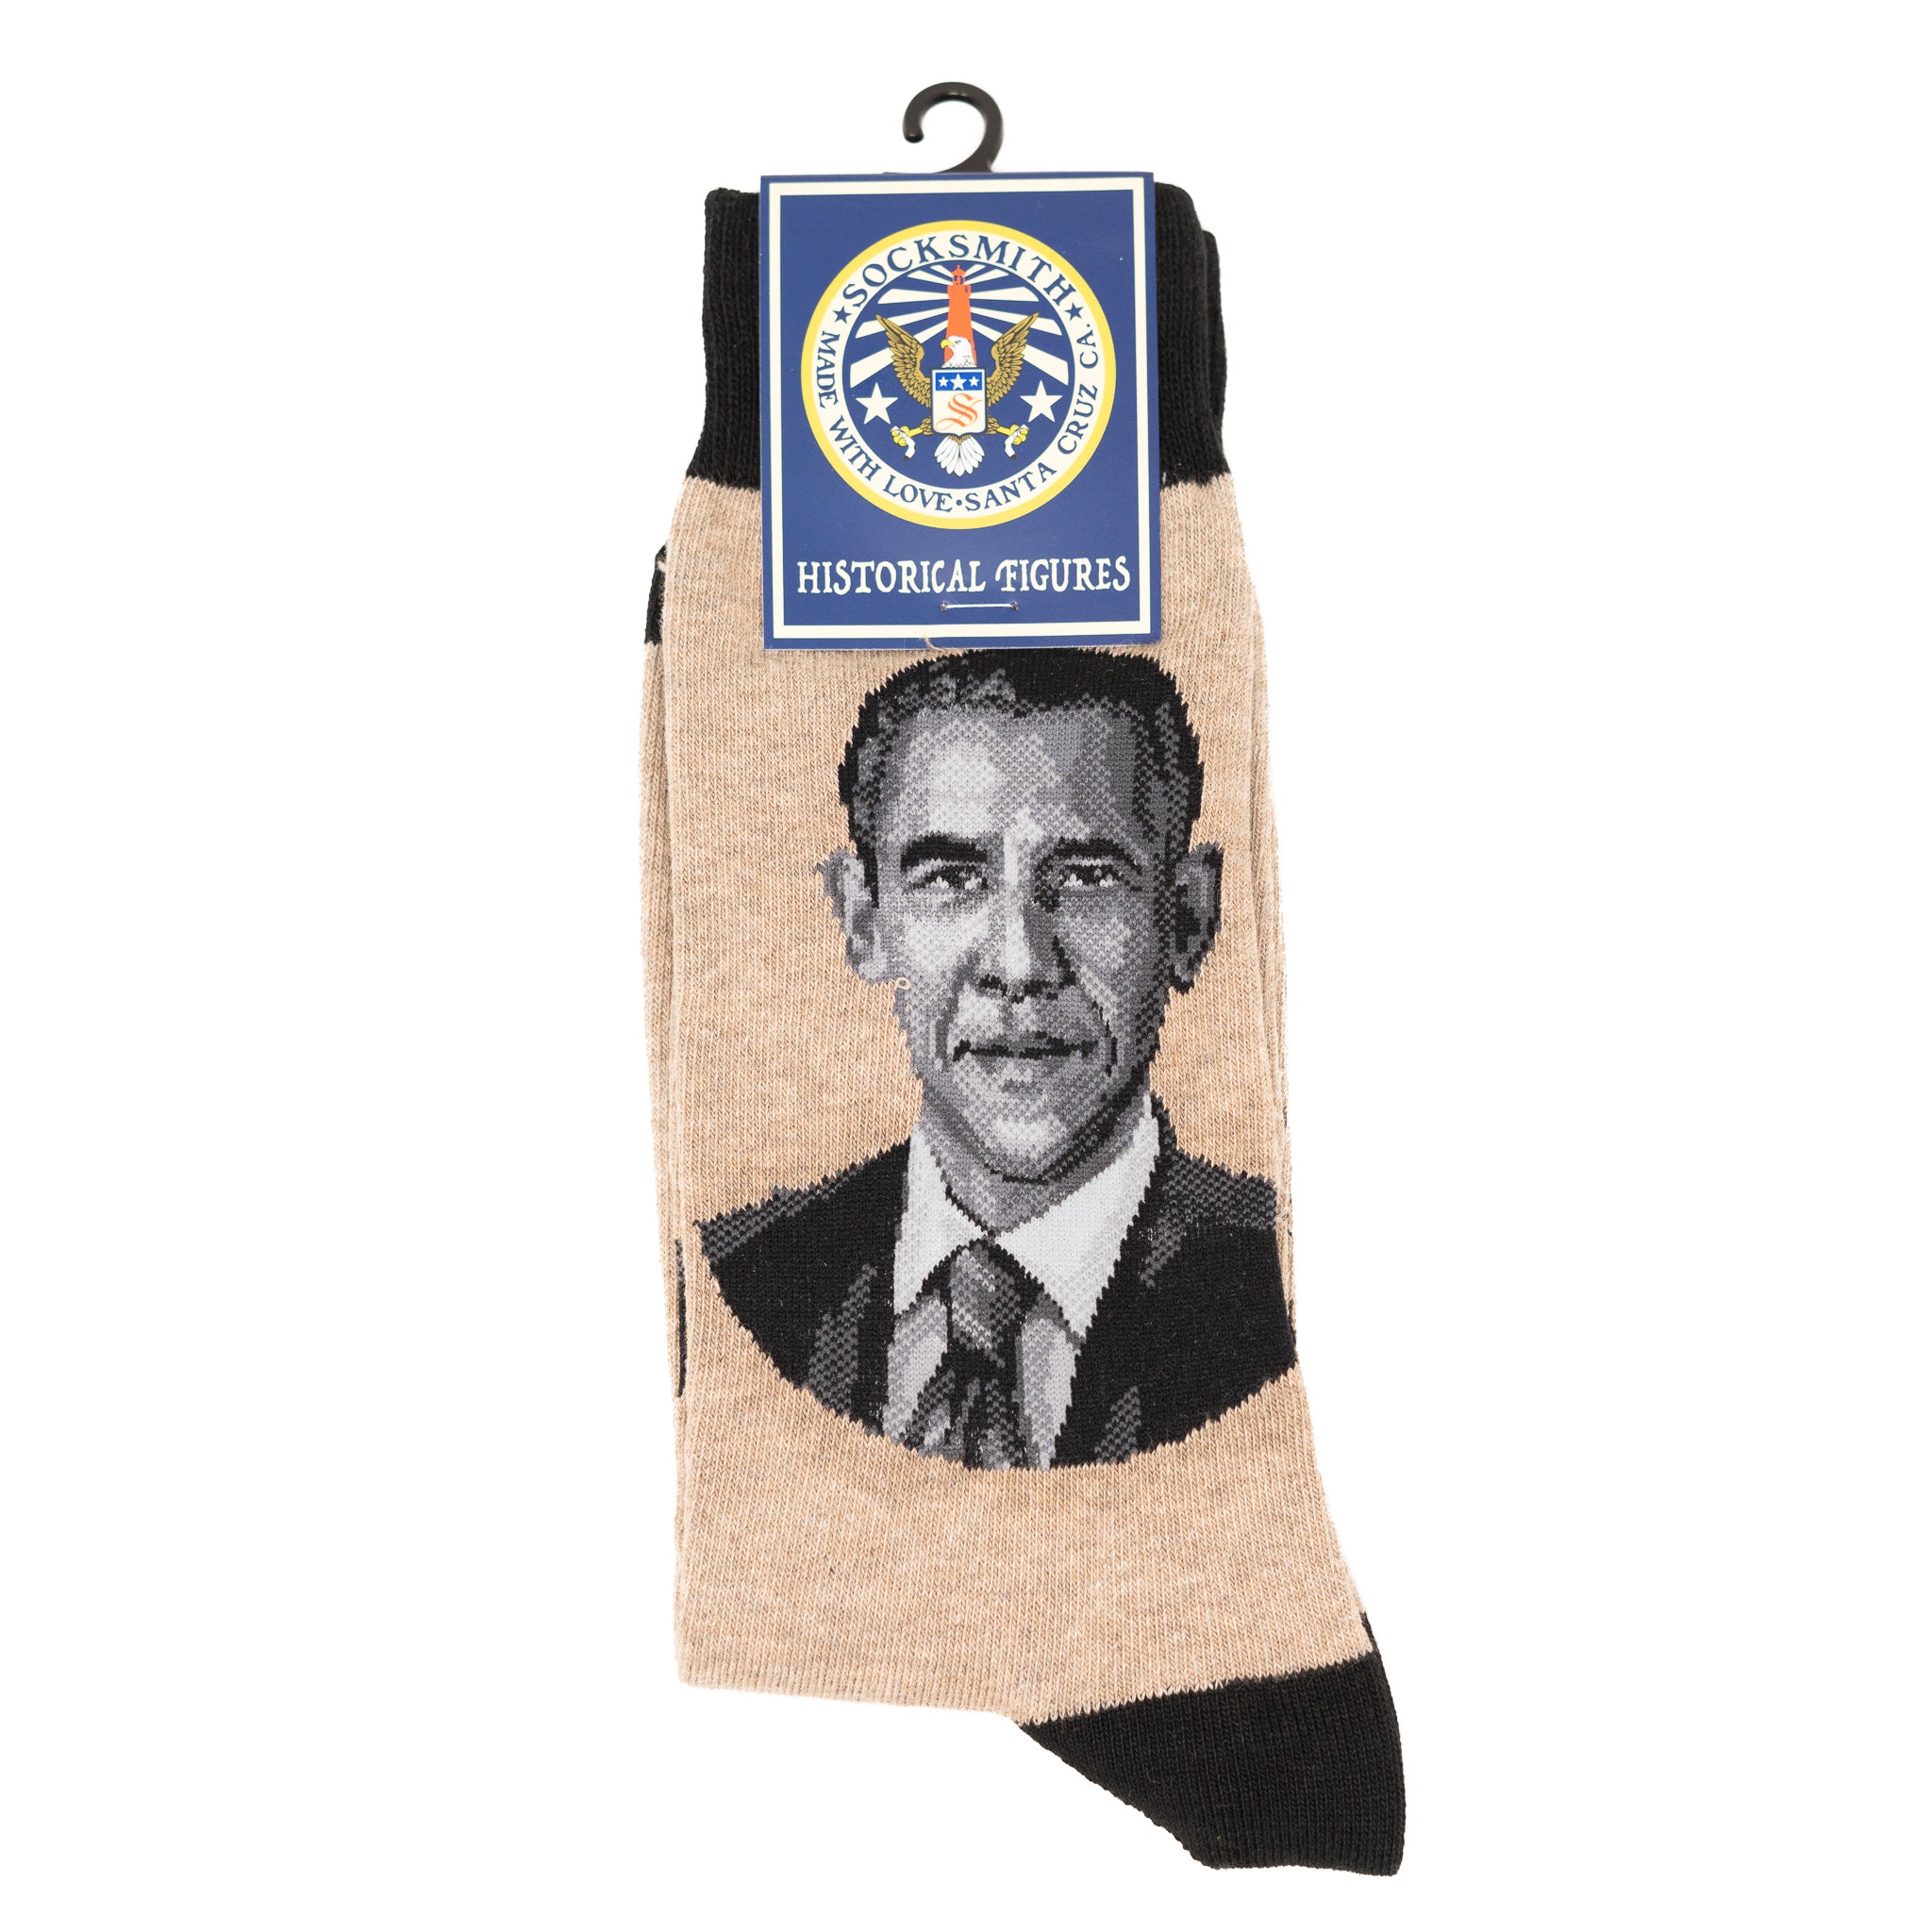 President Obama Portrait Socks (Men's)